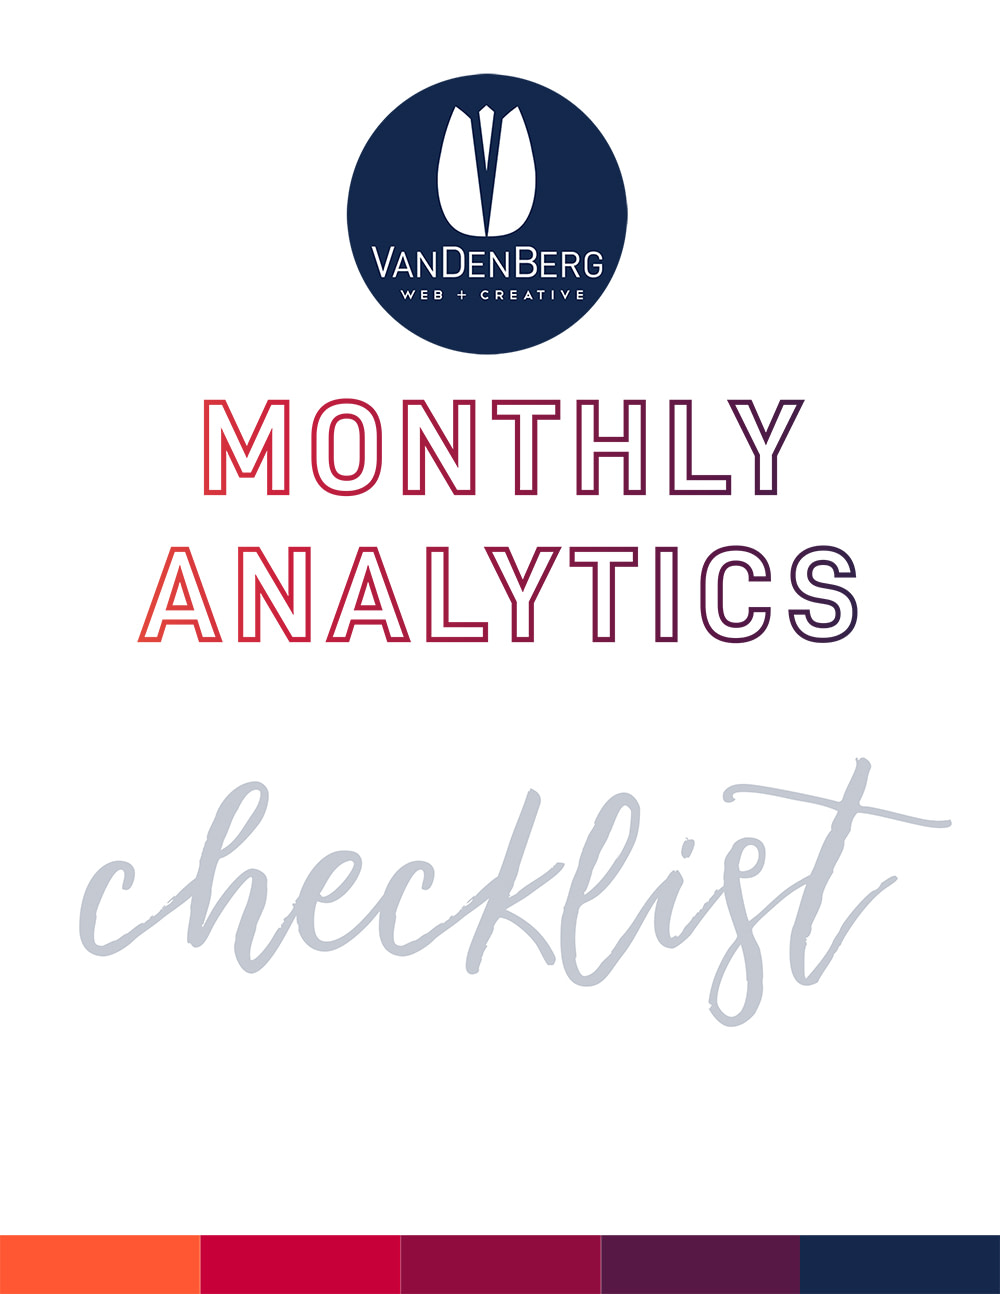 Monthly Analytics Checklist